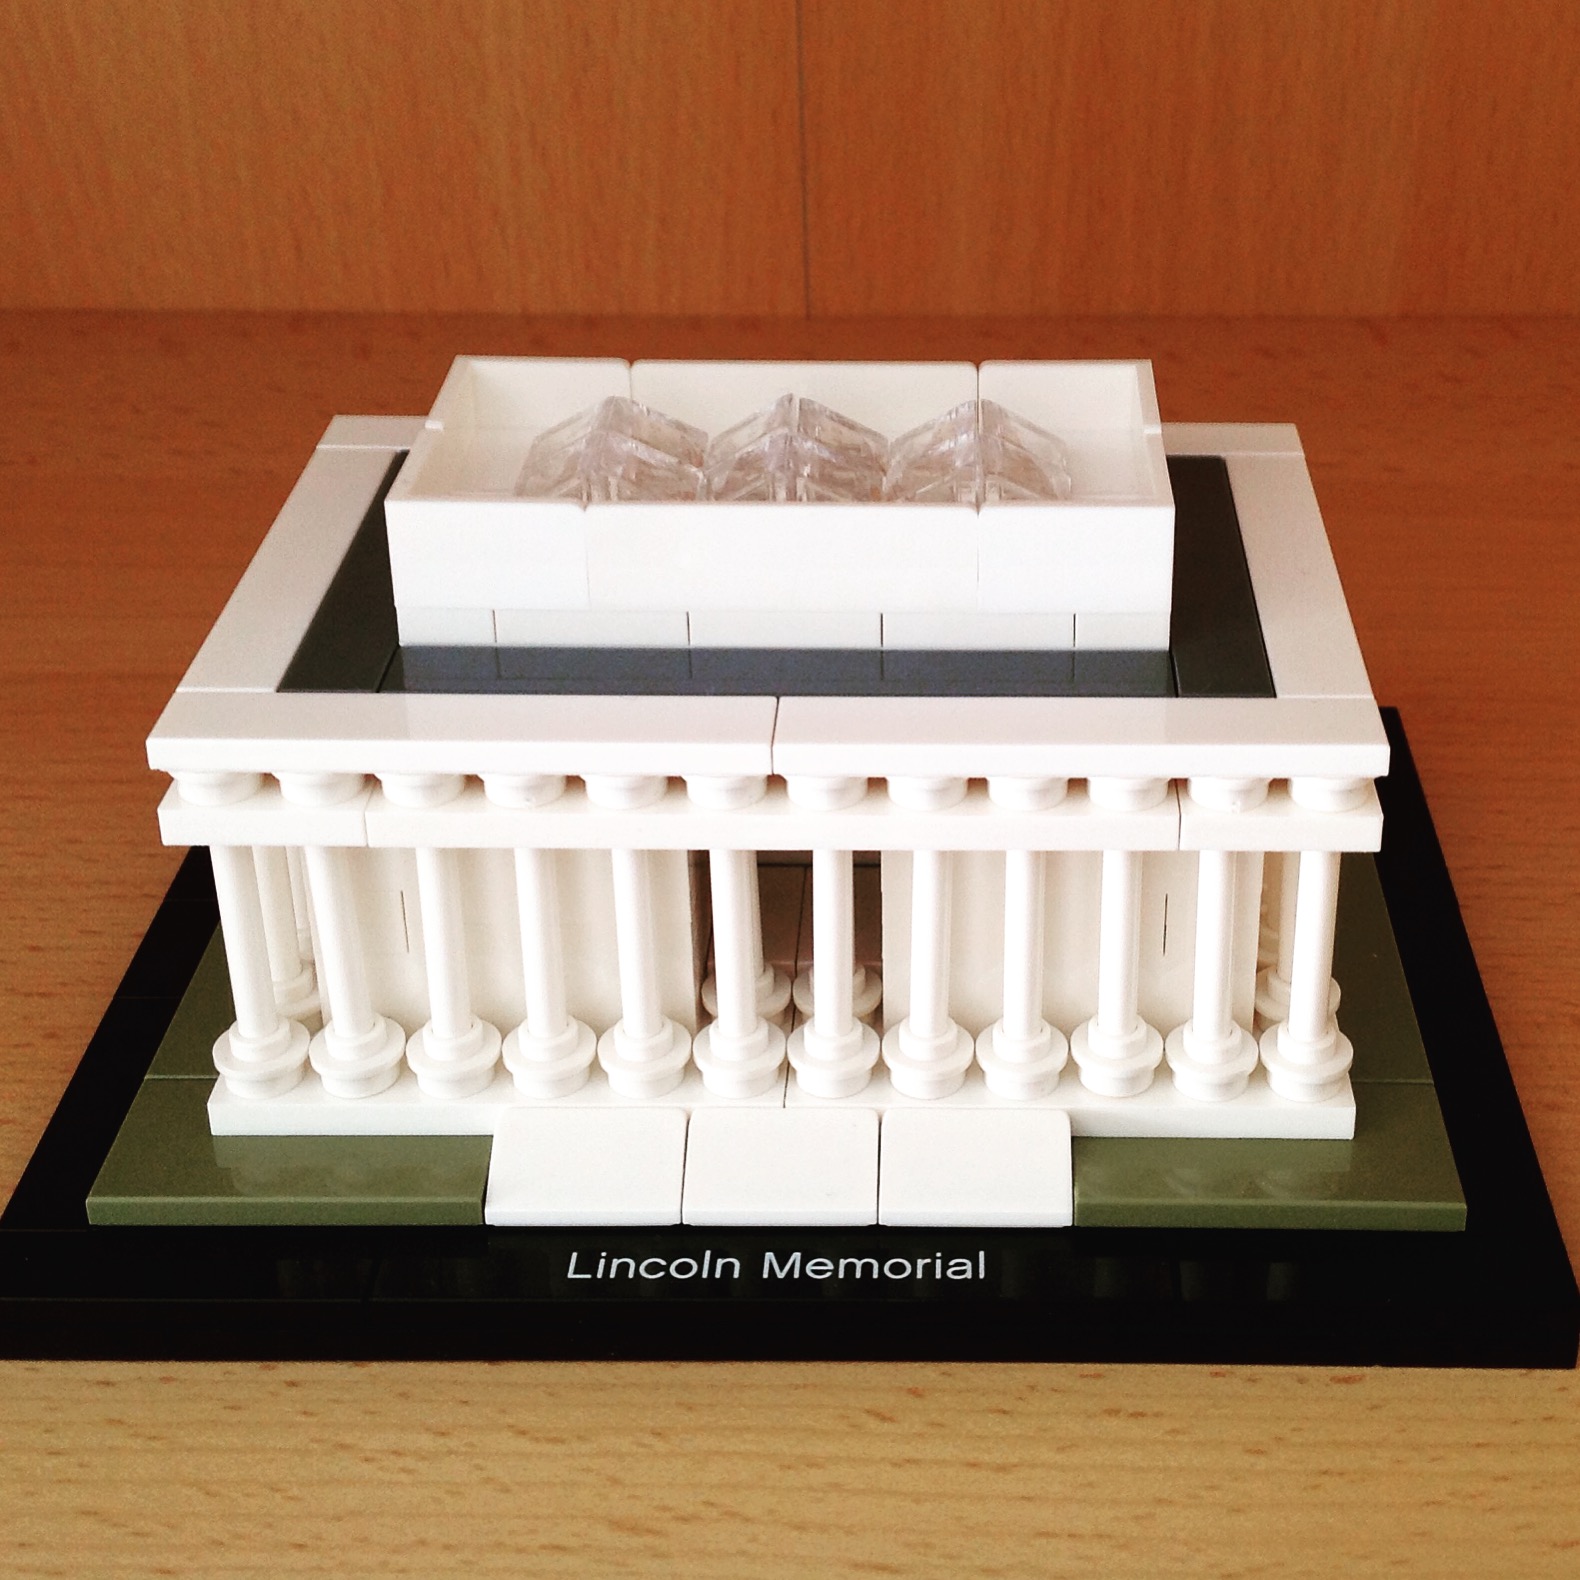 42-lego-architecture-lincoln-memorial